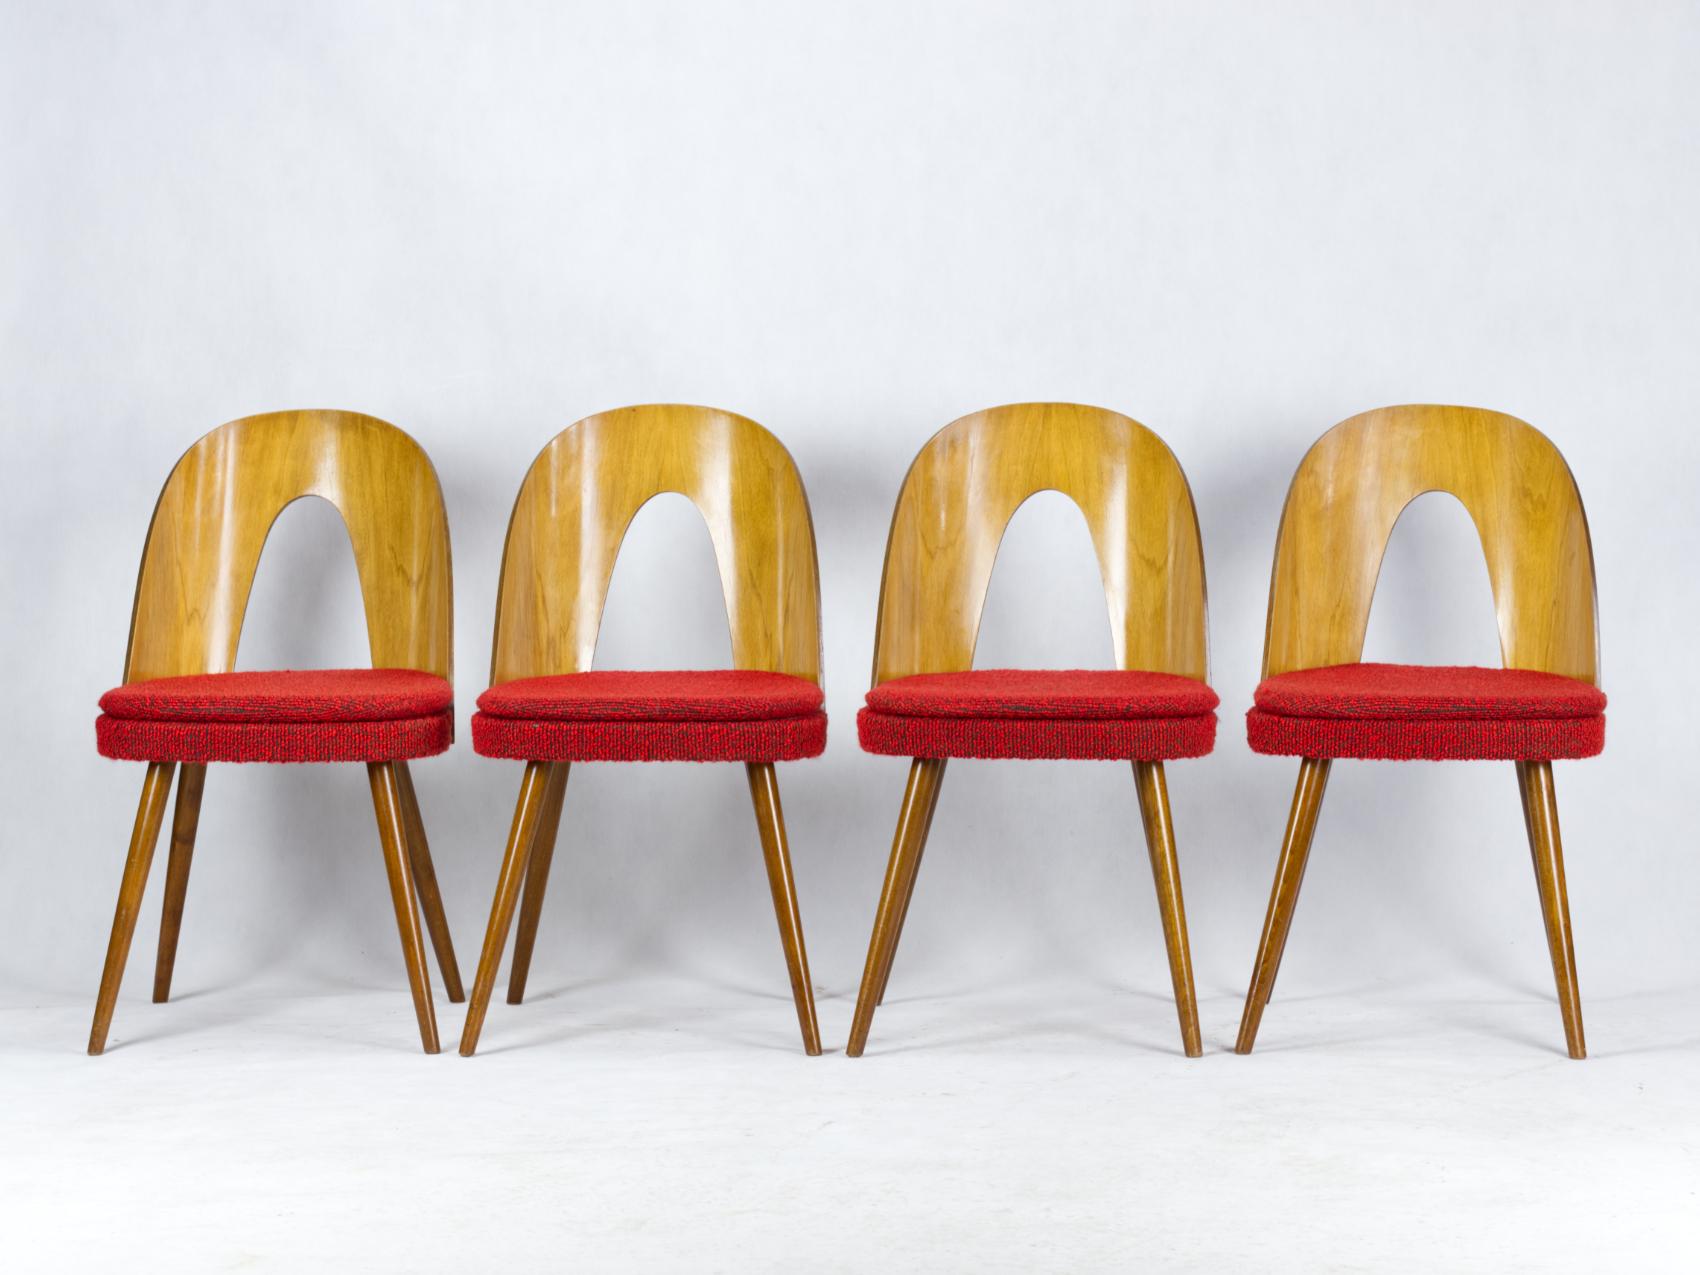 Ces chaises ont été conçues par Antonin Šuman et fabriquées par la société Tatra Nabytok, dans les années 1960, en Tchécoslovaquie. Chaises en bon état vintage.